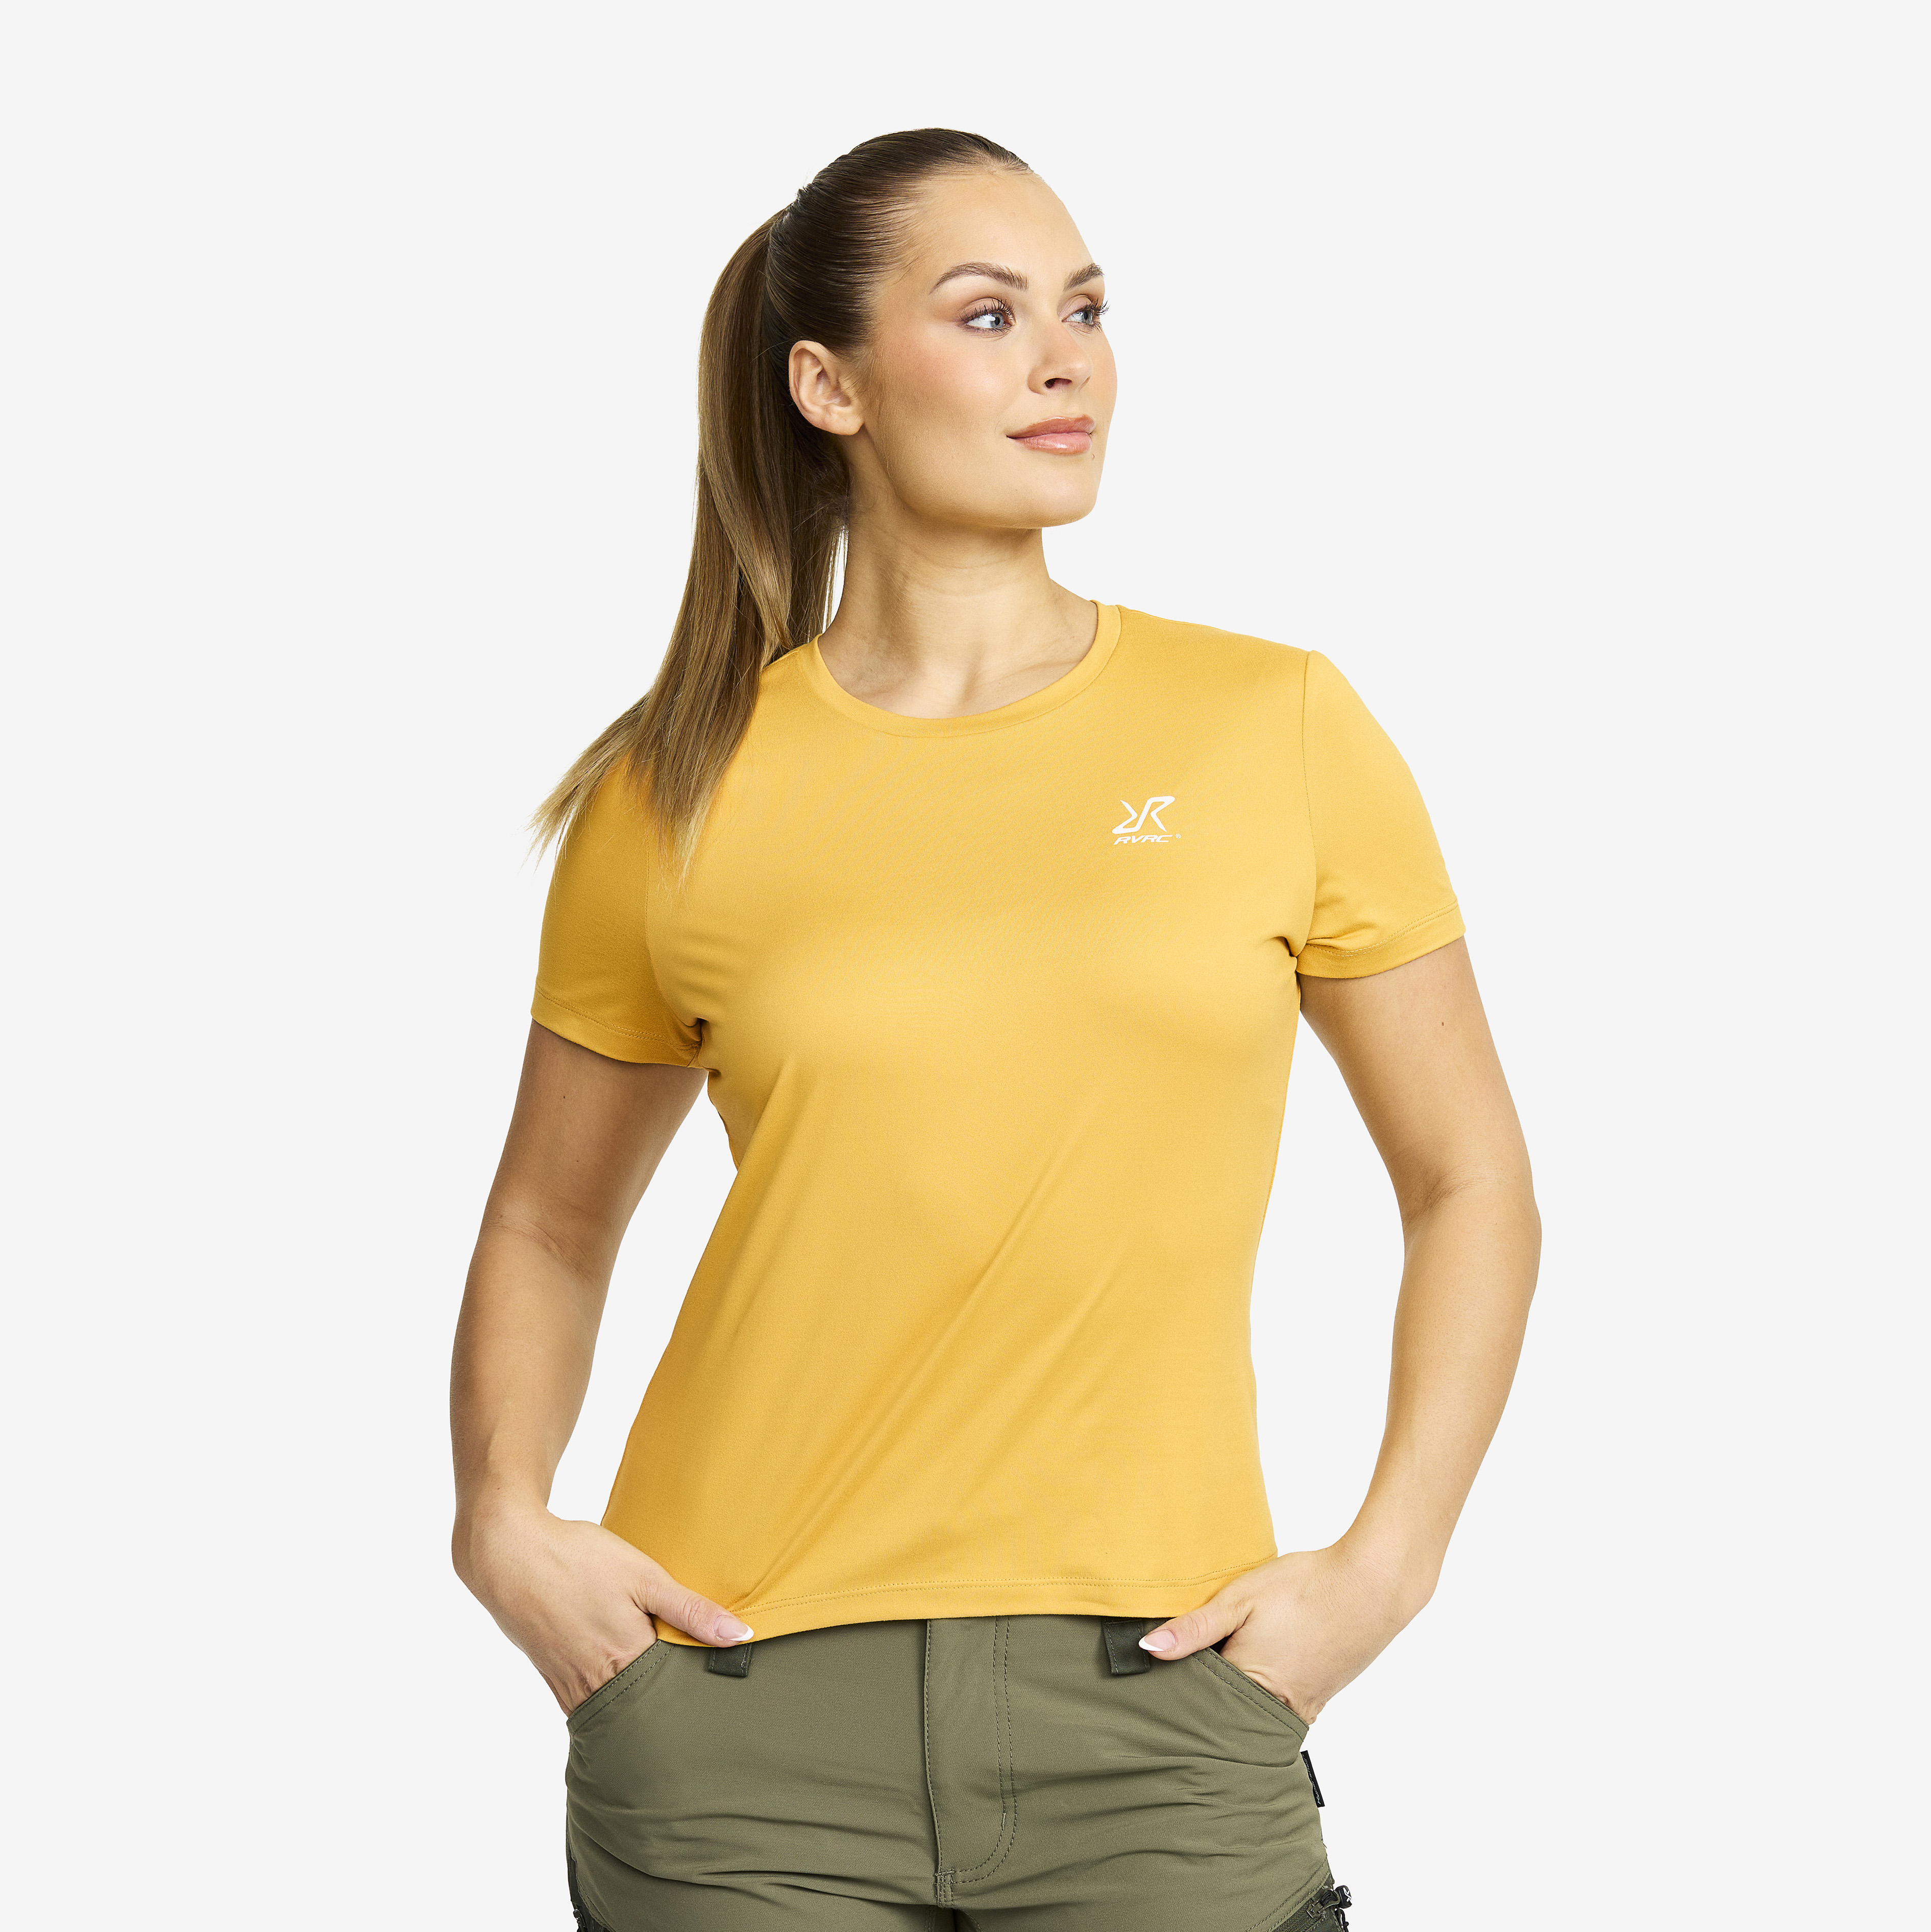 Mission T-shirt Sauterne Women